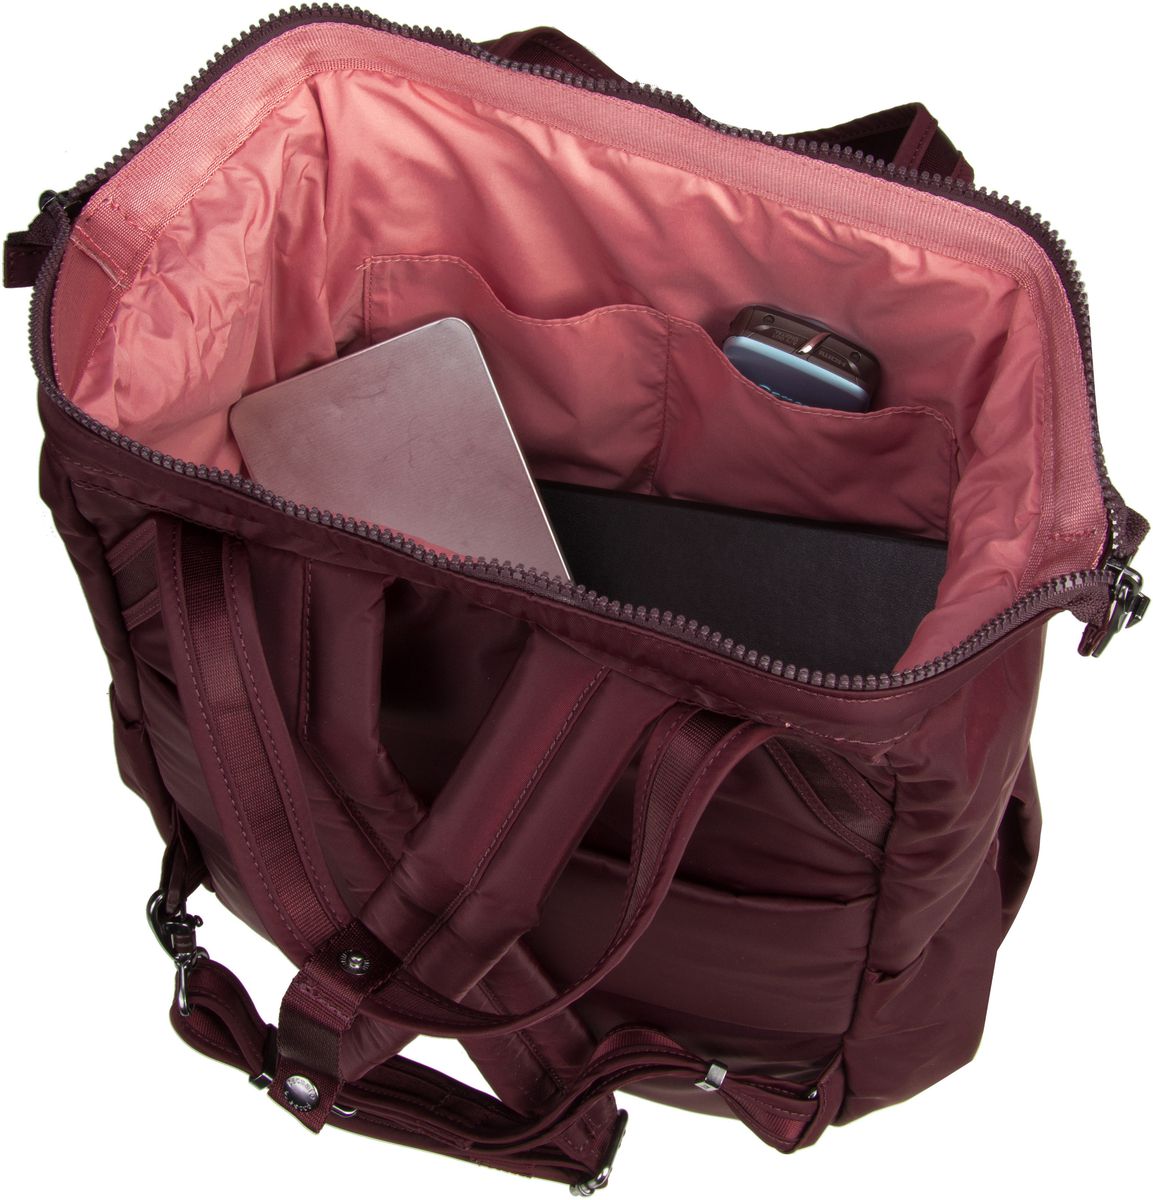 Pacsafe Citysafe CX Backpack - Merlot